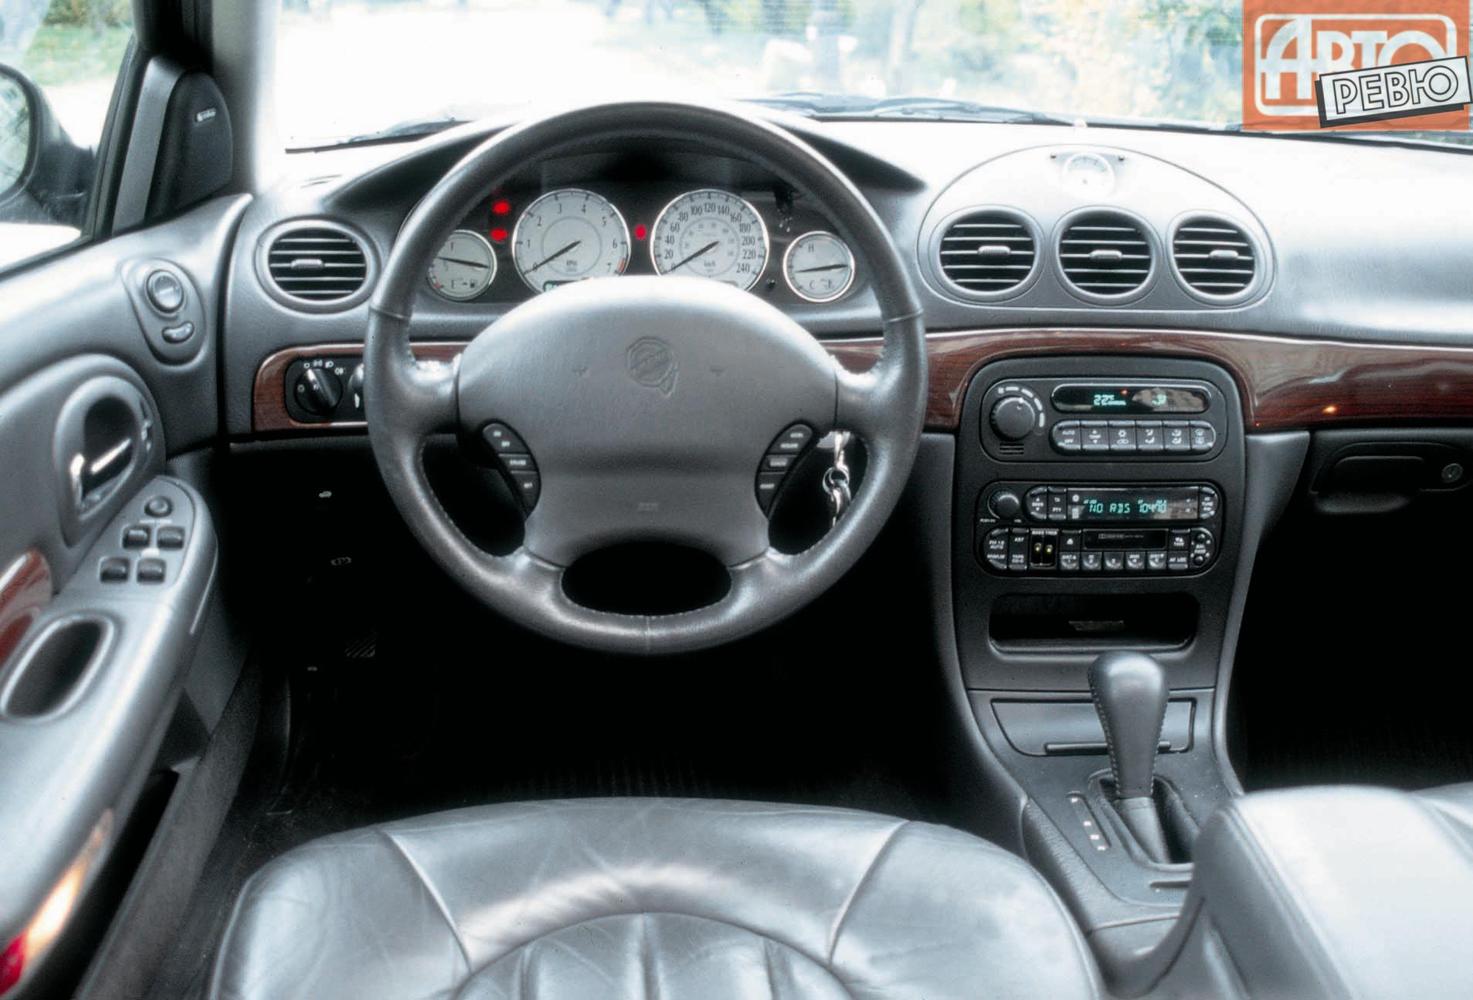 седан Chrysler 300M 1998 - 2004г выпуска модификация 2.7 AT (203 л.с.)